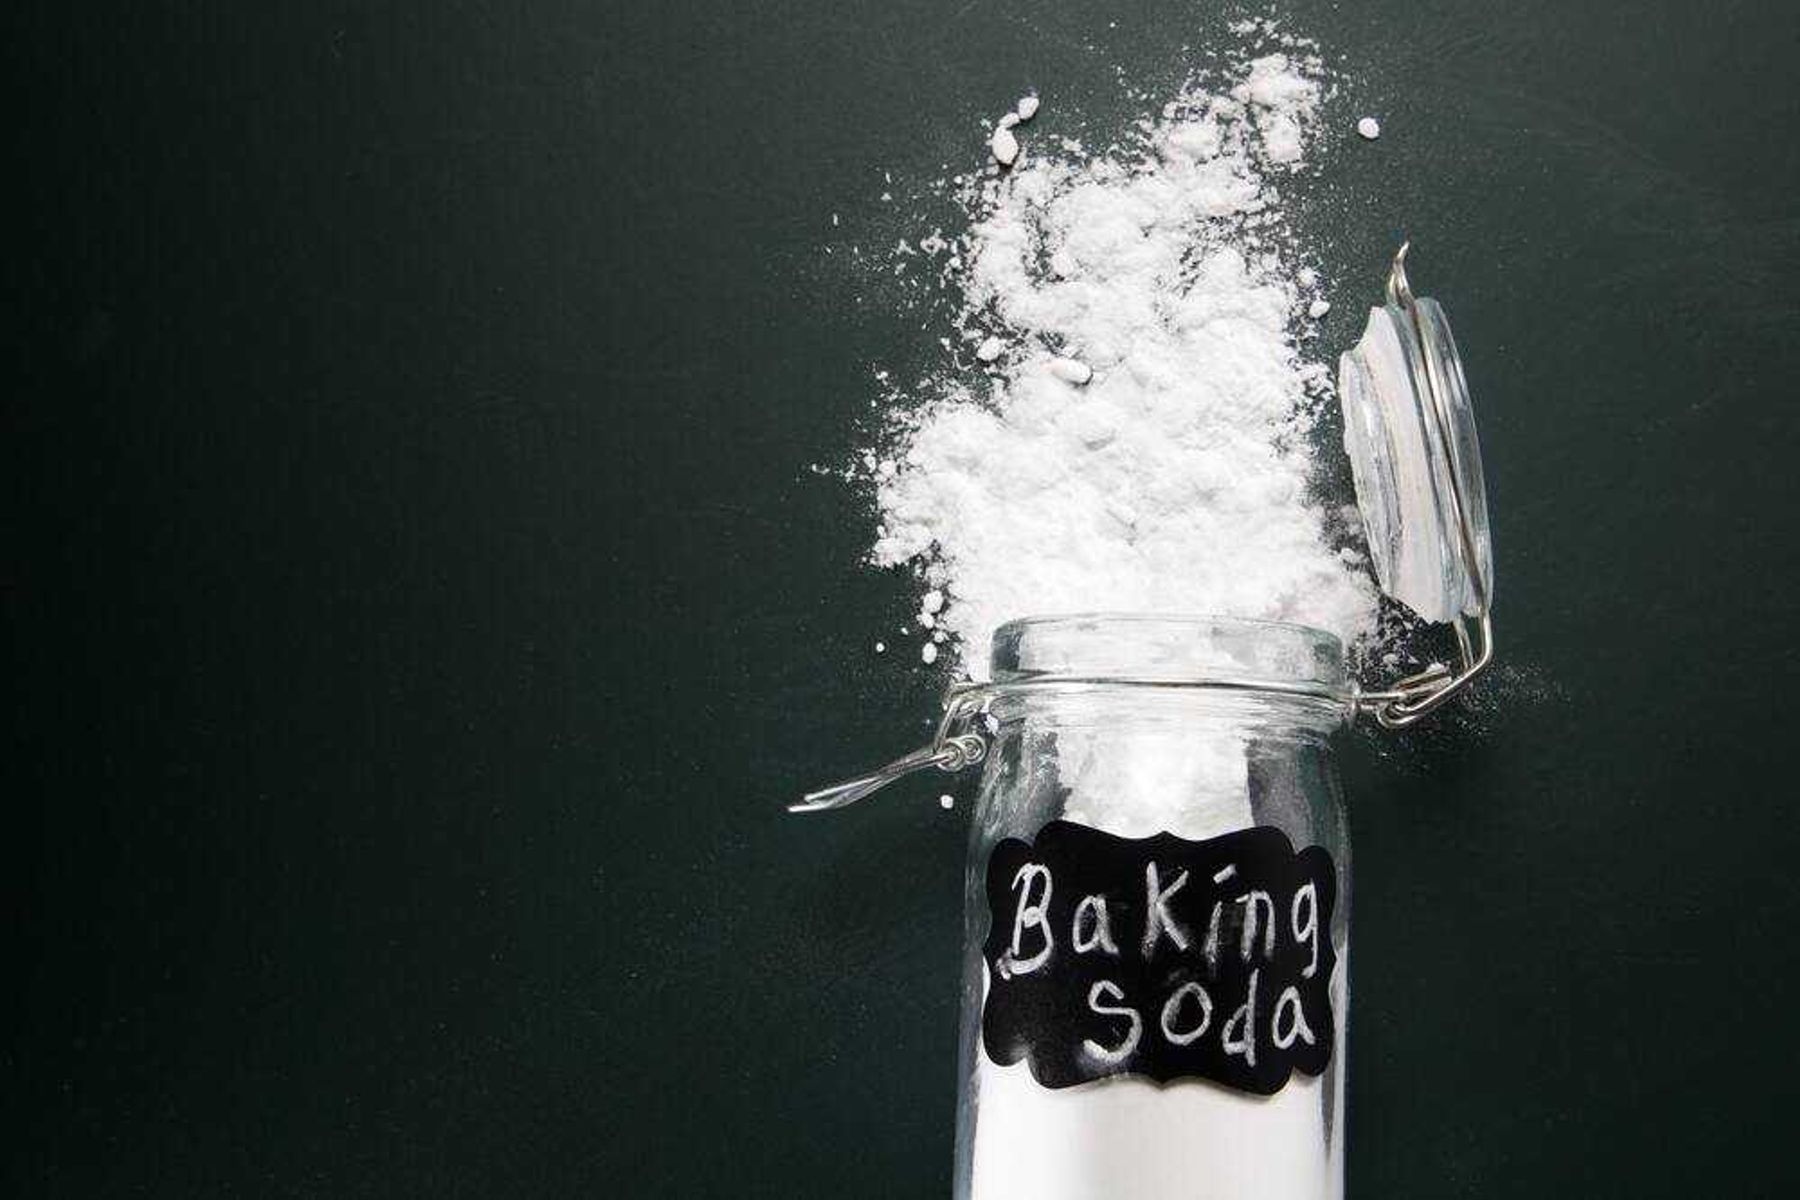 Baking soda là gì? Tác dụng và cách sử dụng